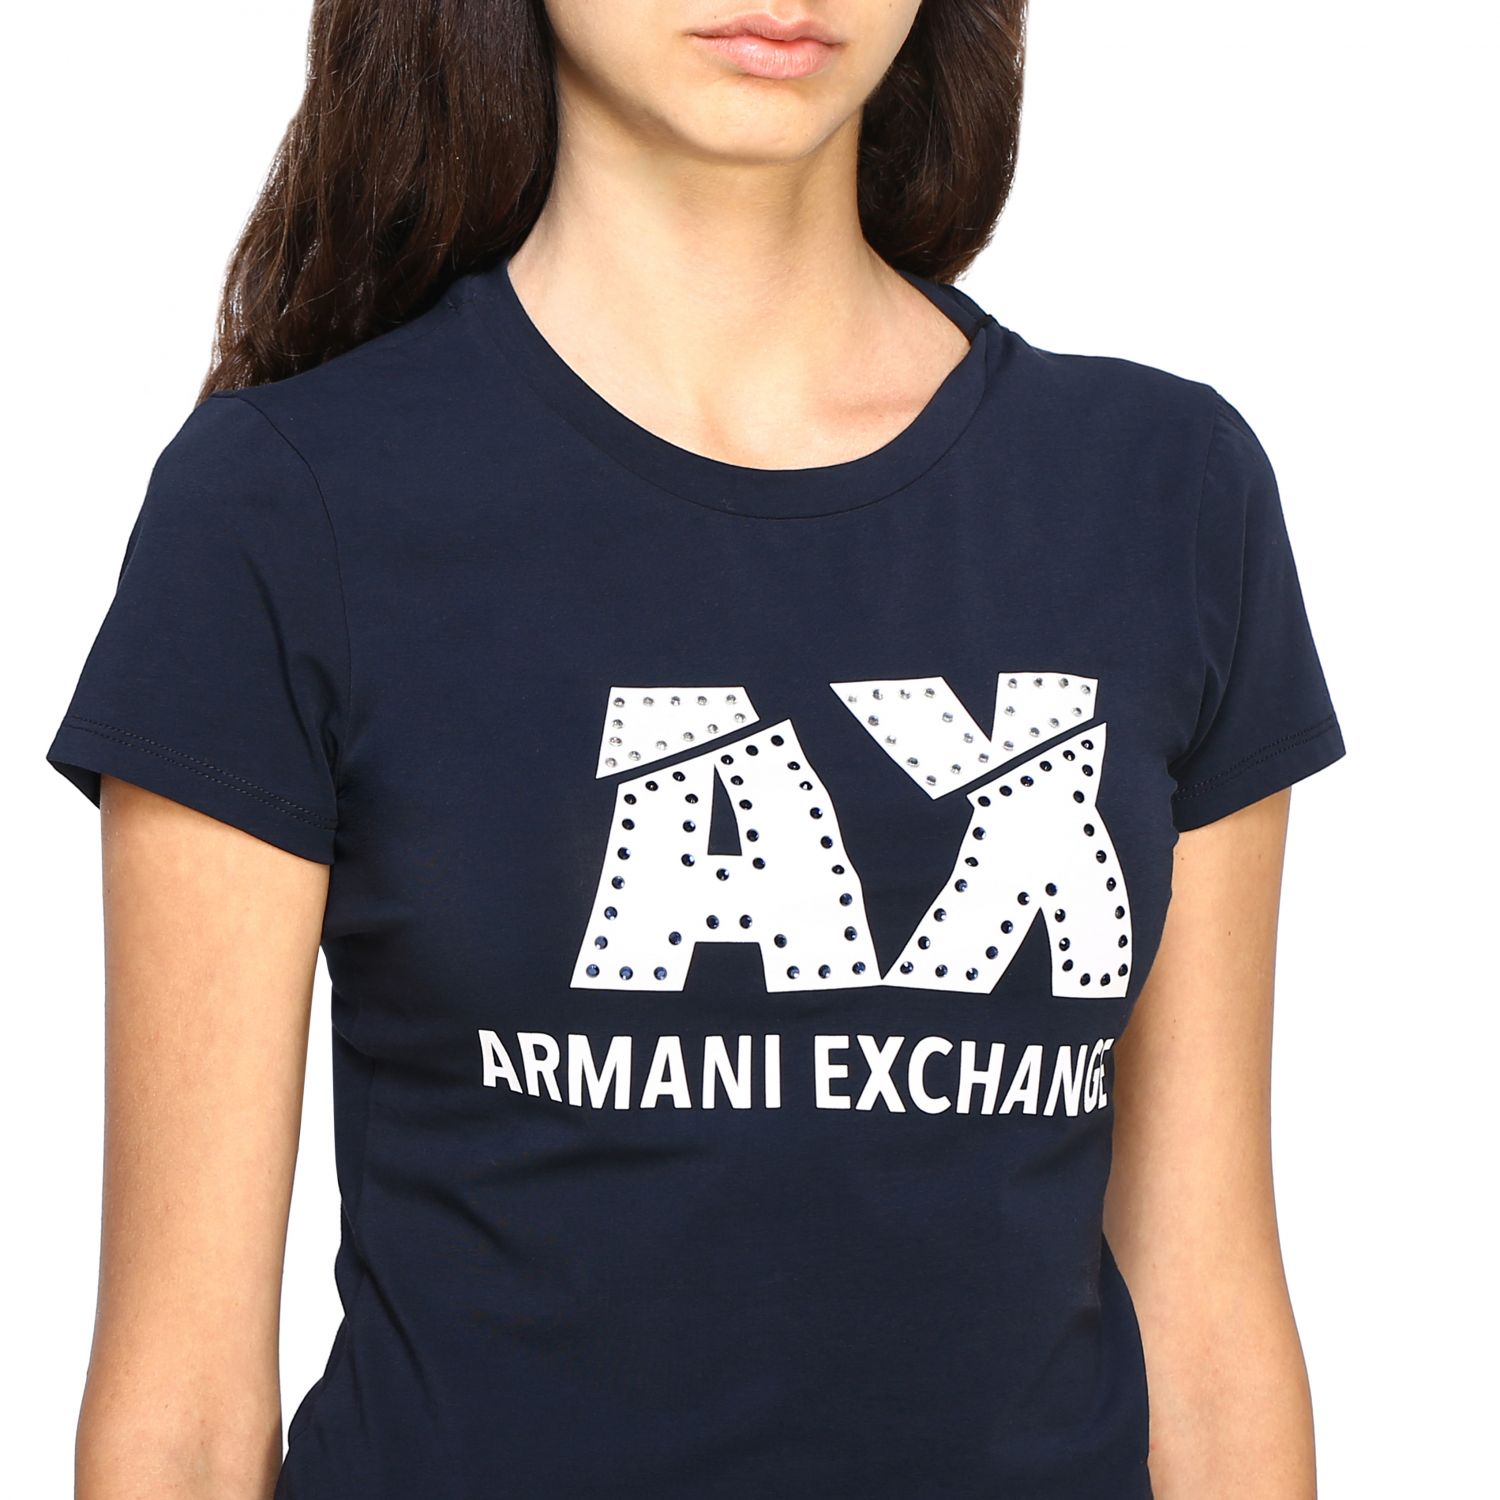 armani exchange tshirt women